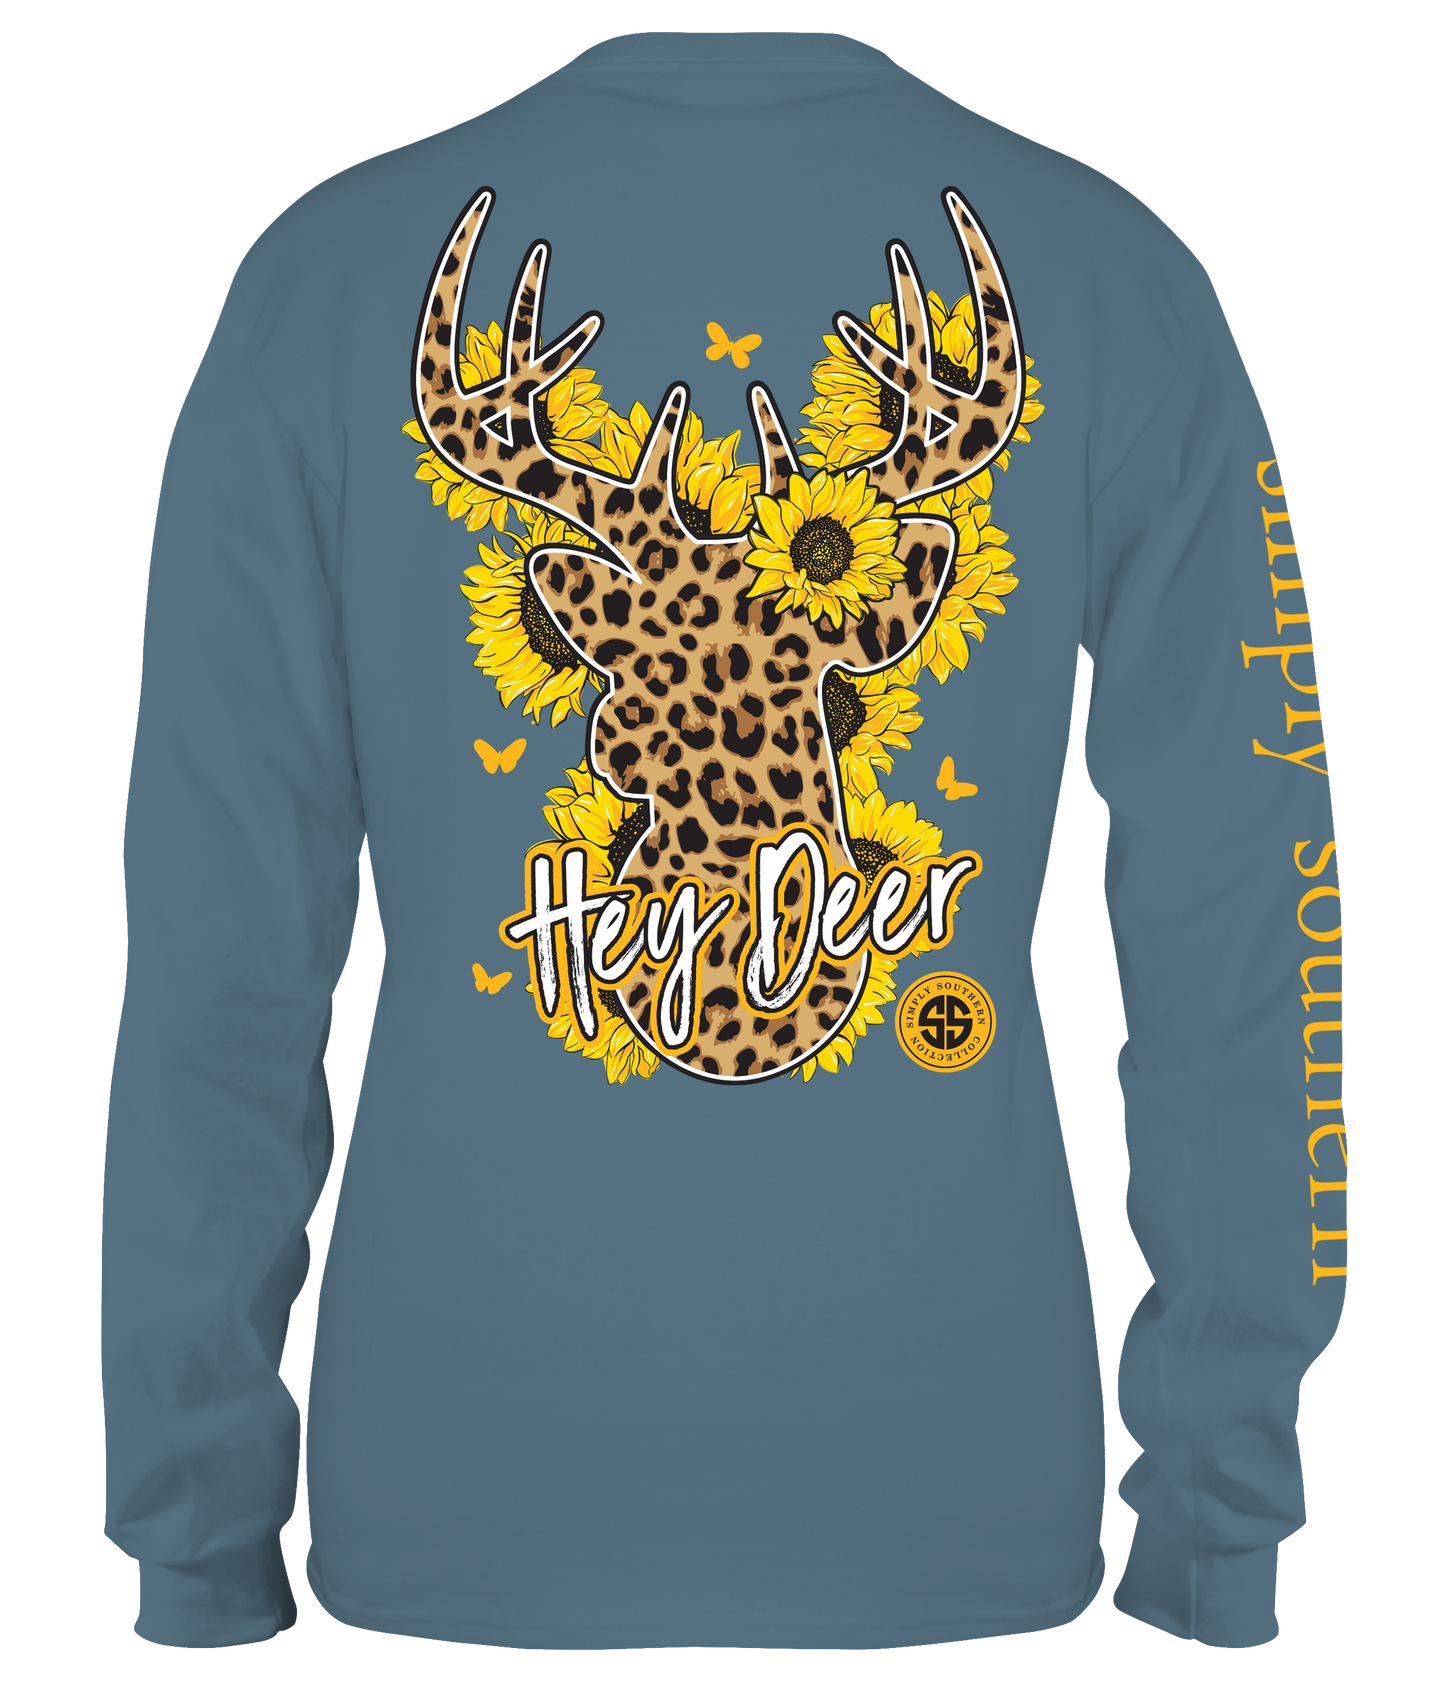 Hey Deer Cheetah SS Longsleeve - Final Sale